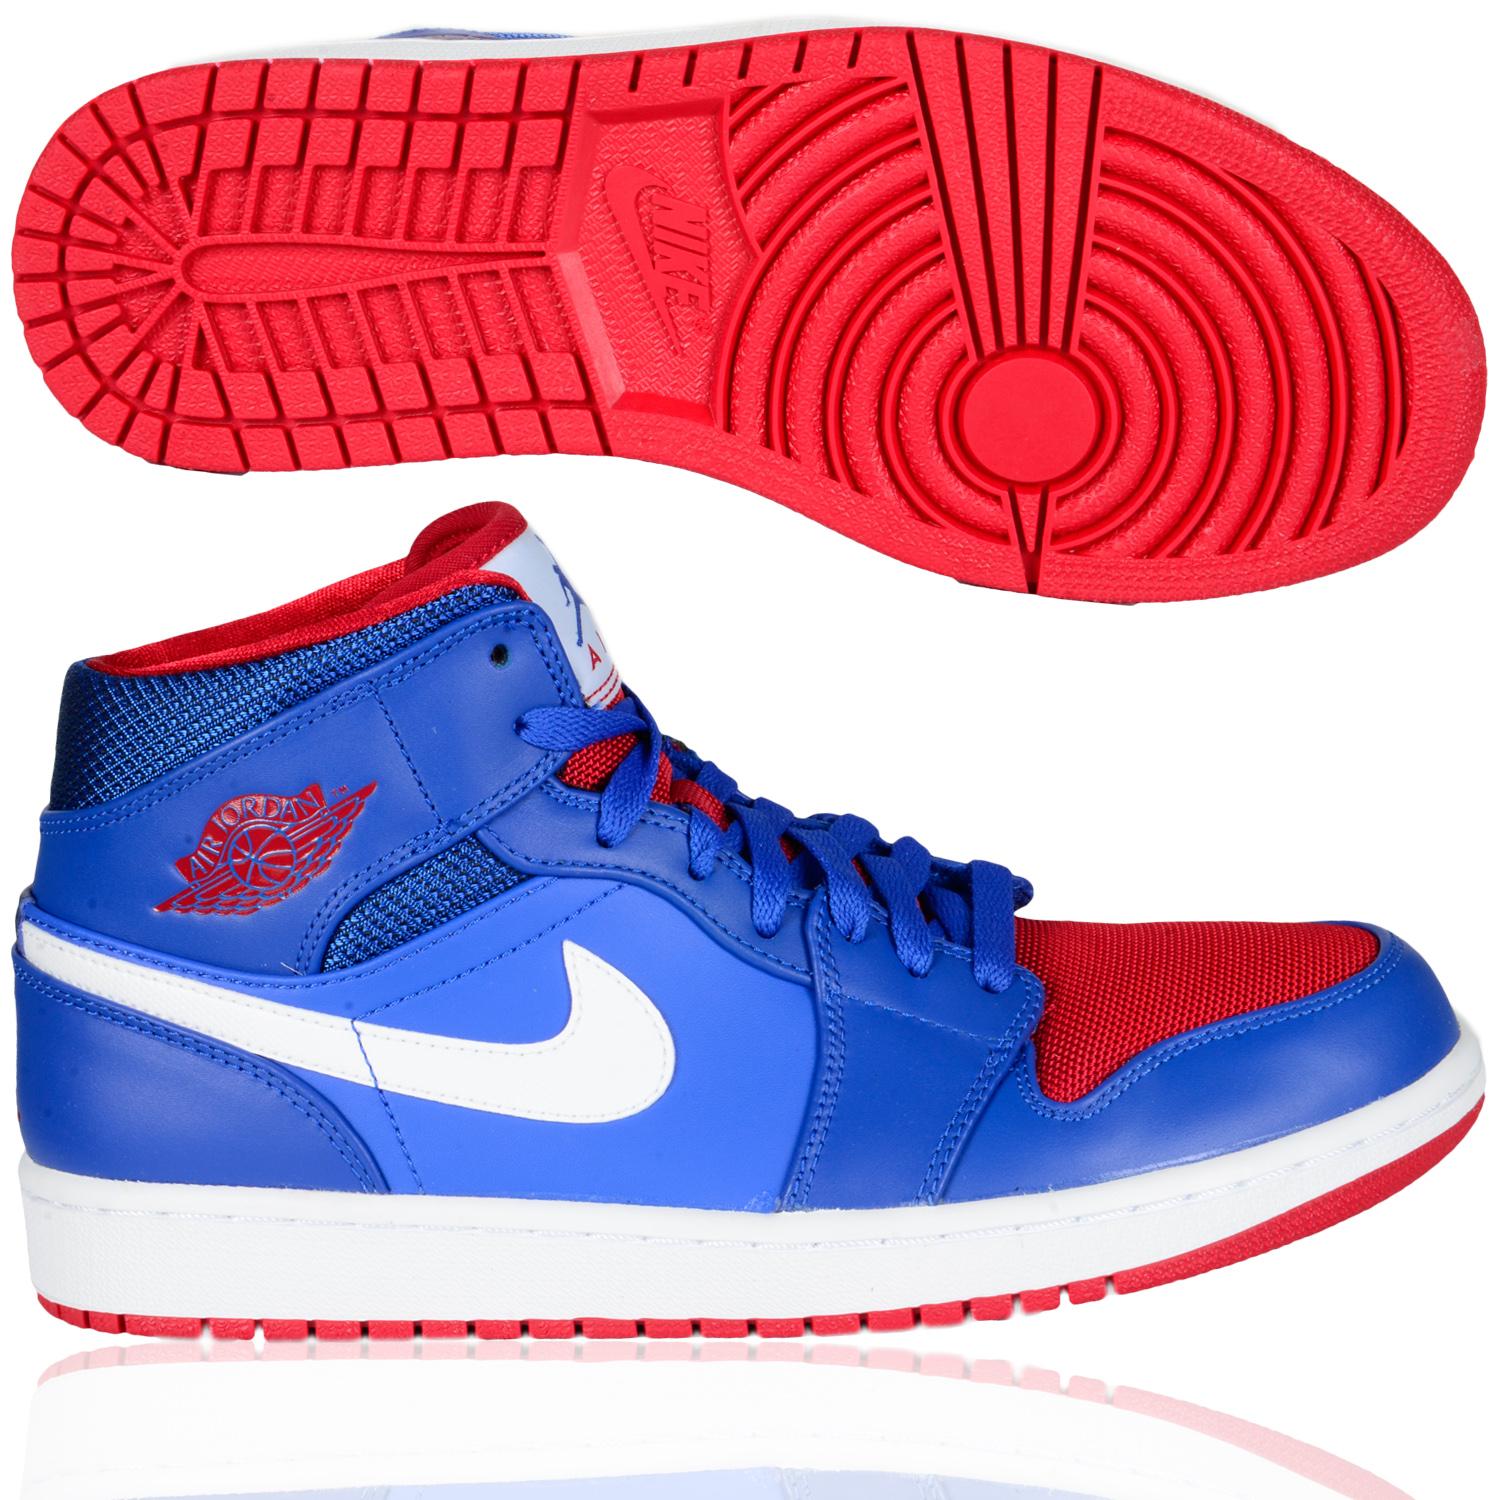 Foto Nike Shoe Air Jordan 1 Mid Hombres Zapatillas De Baloncesto Azul Rojo foto 289395